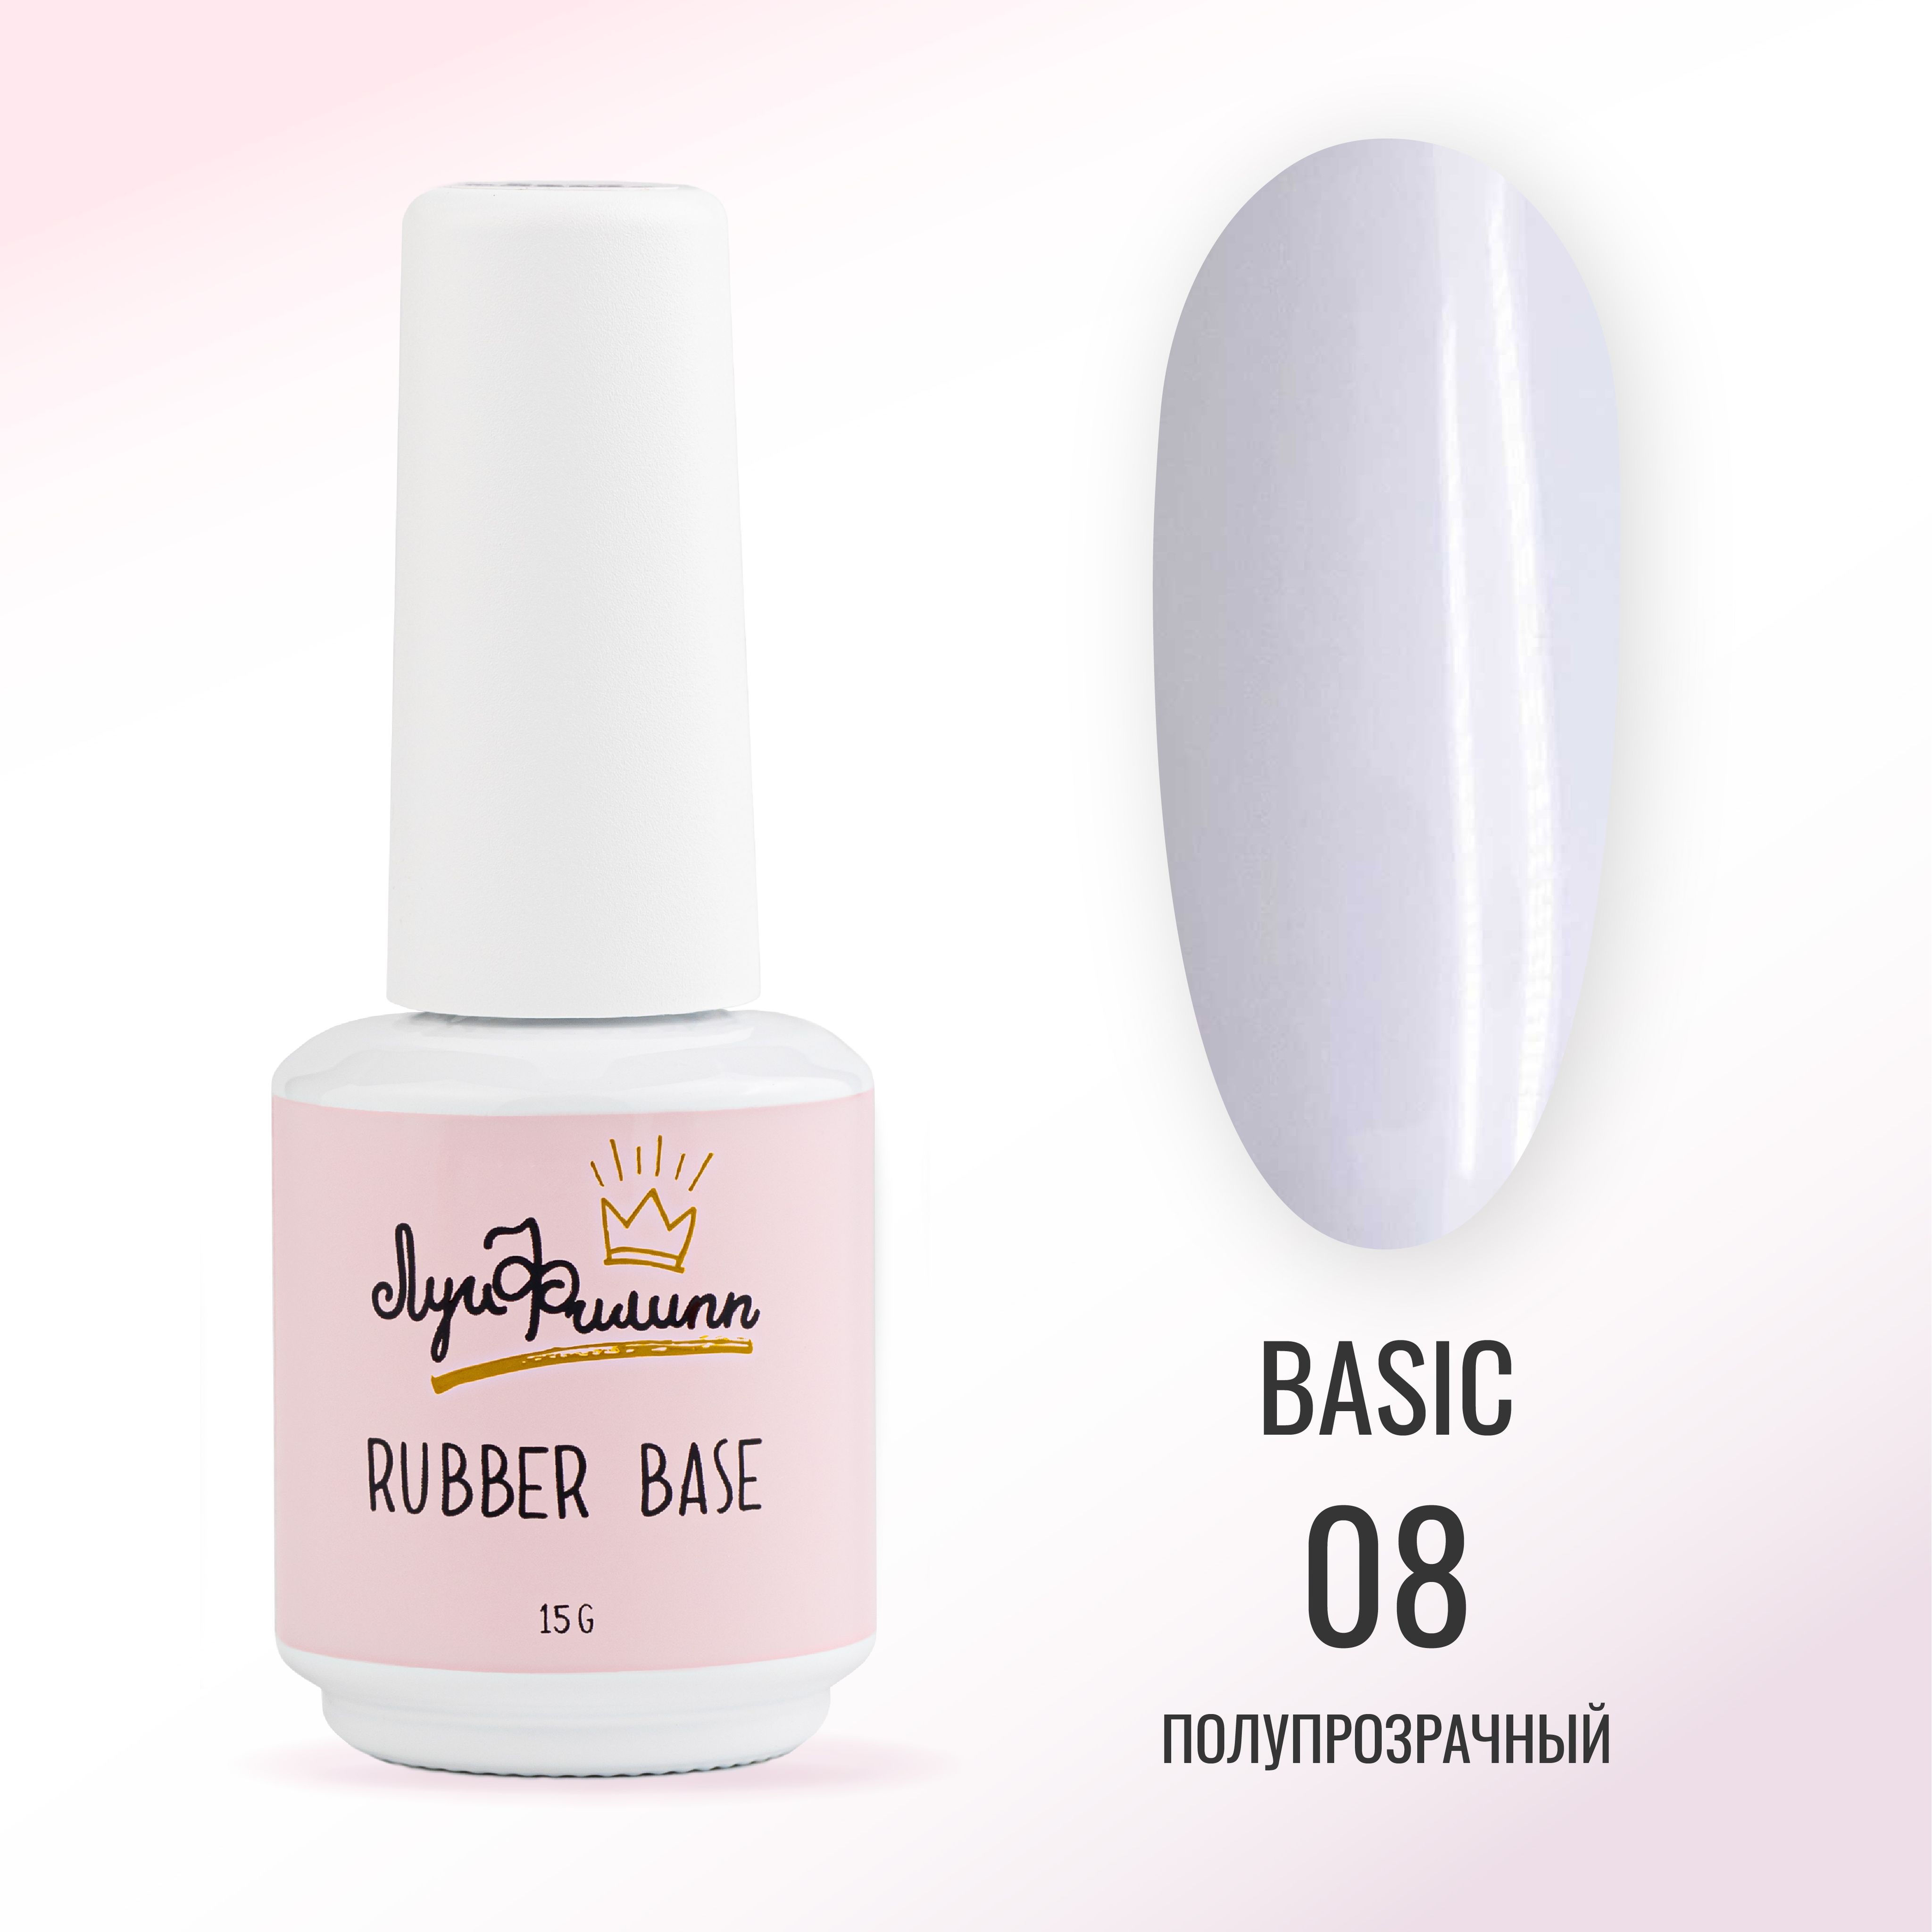 Базовое покрытие для ногтей Луи Филипп Rubber Base Basic № 08 15g эластичное базовое покрытие ледяной розовый elastic base coat ice pink